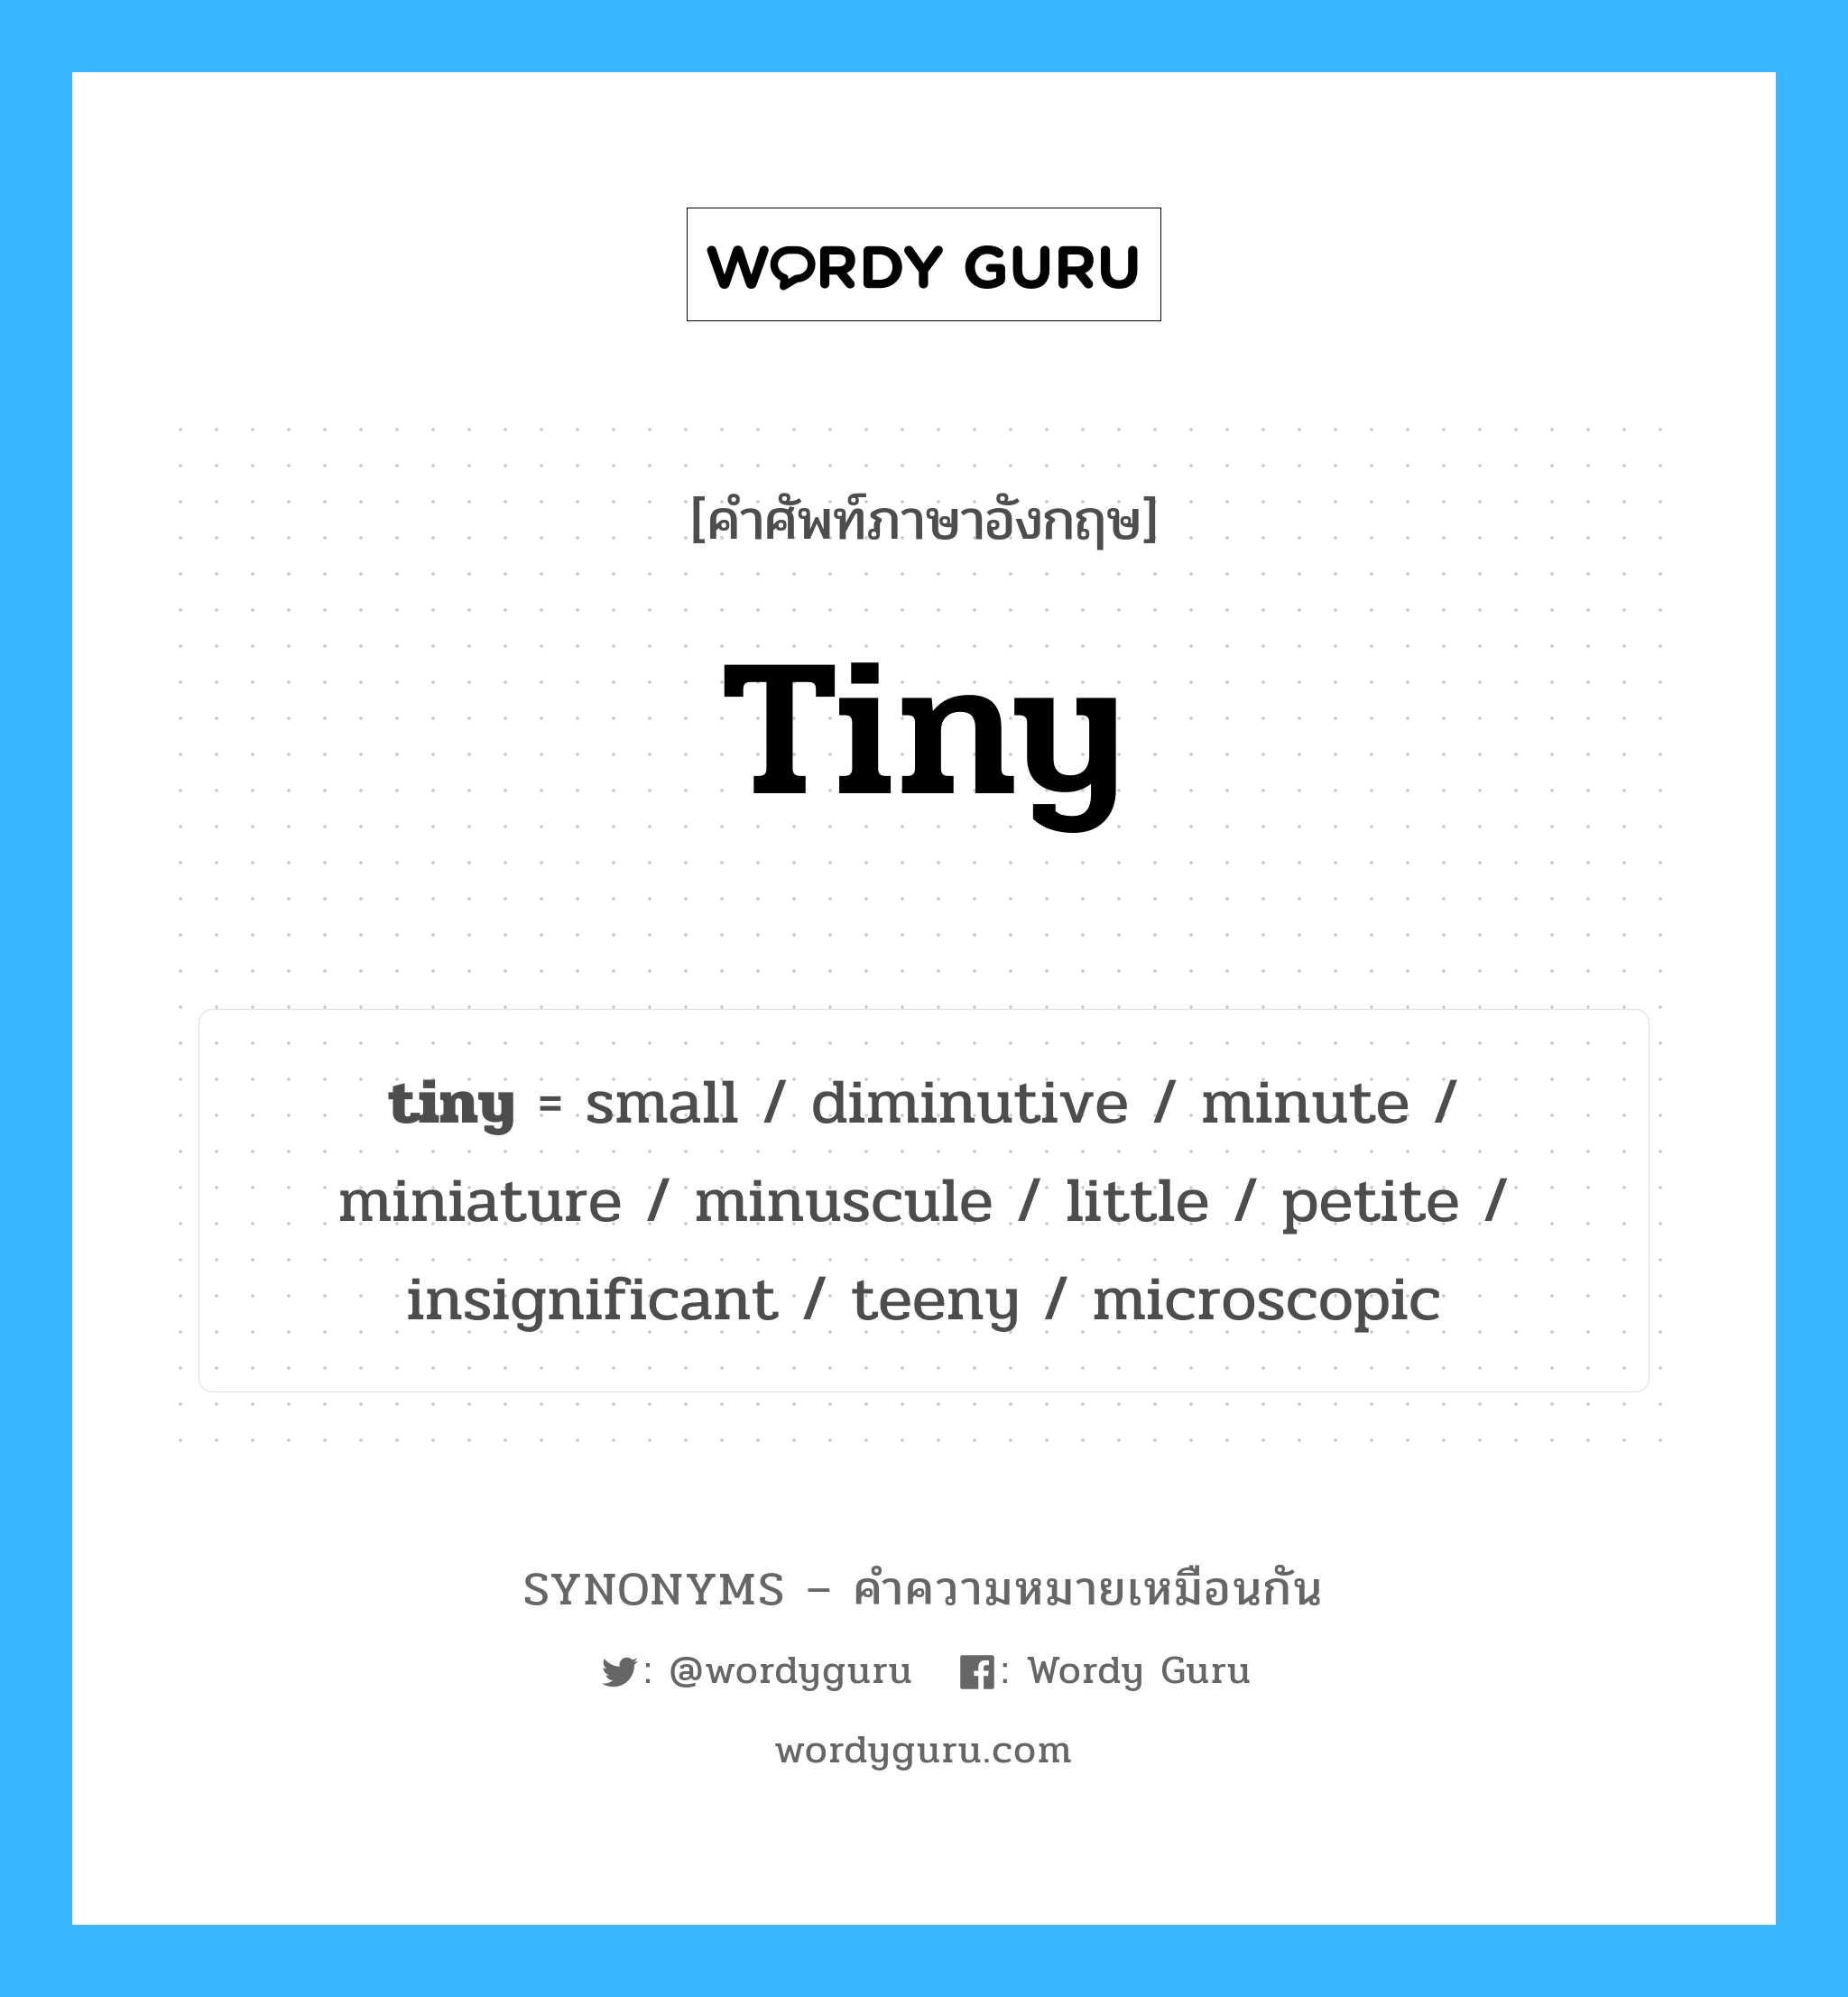 little เป็นหนึ่งใน tiny และมีคำอื่น ๆ อีกดังนี้, คำศัพท์ภาษาอังกฤษ little ความหมายคล้ายกันกับ tiny แปลว่า เล็ก ๆ น้อย ๆ หมวด tiny